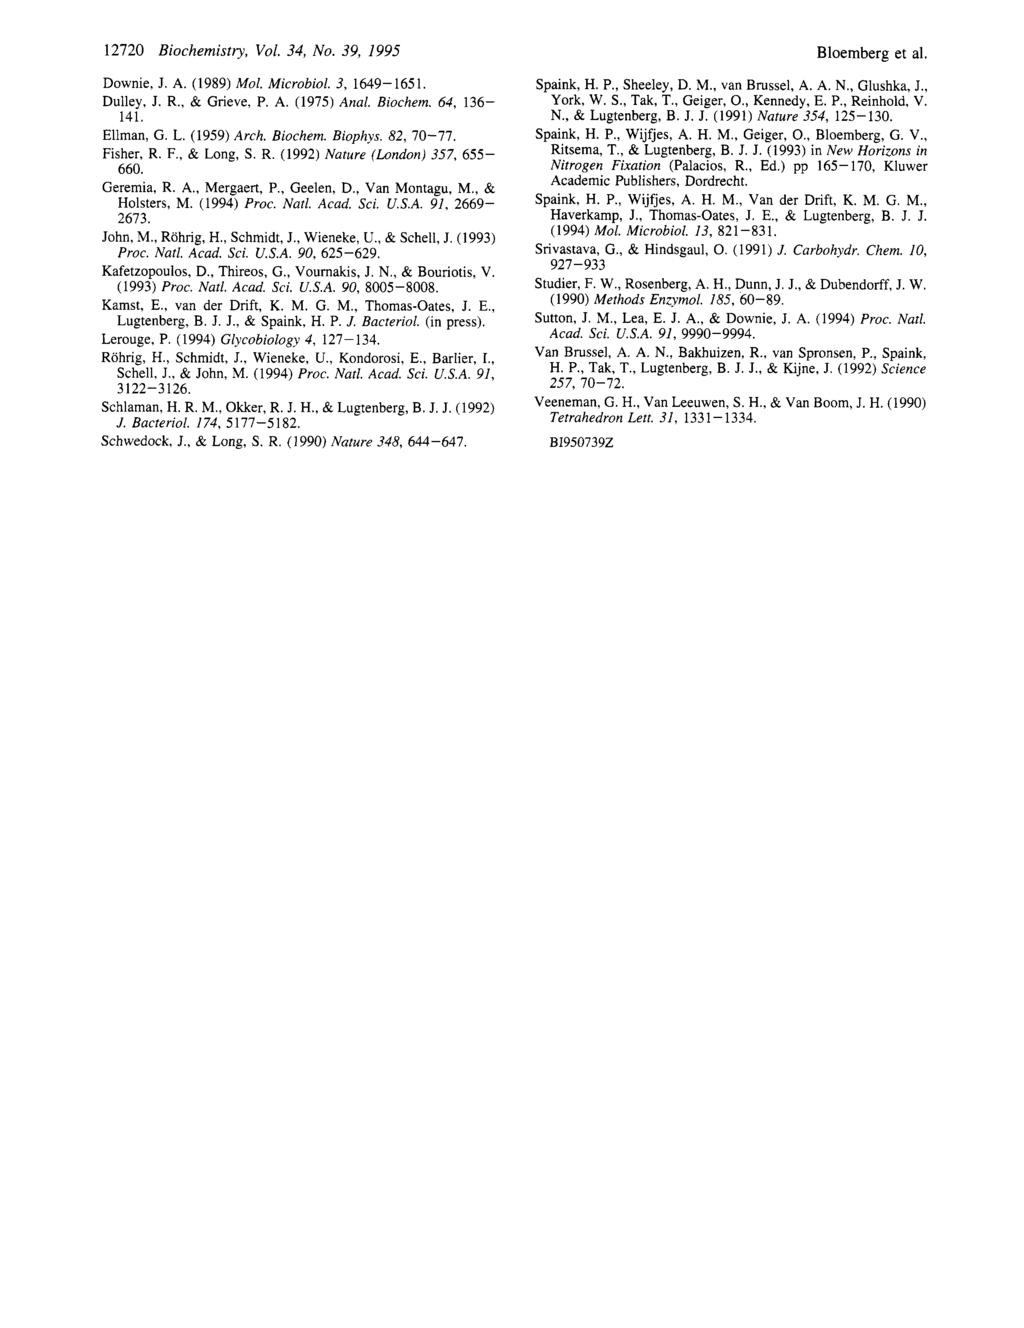 12720 Biohemistry, Vol. 34, No. 39, 1995 Downie, J. A. (1989) Mol. Mirobiol. 3, 1649-1651. Dulley, J. R., & Grieve, P. A. (1975) Anal. Biohem. 64, 136-141. Ellman, G. L. (1959) Arh. Biohem. Biophys.